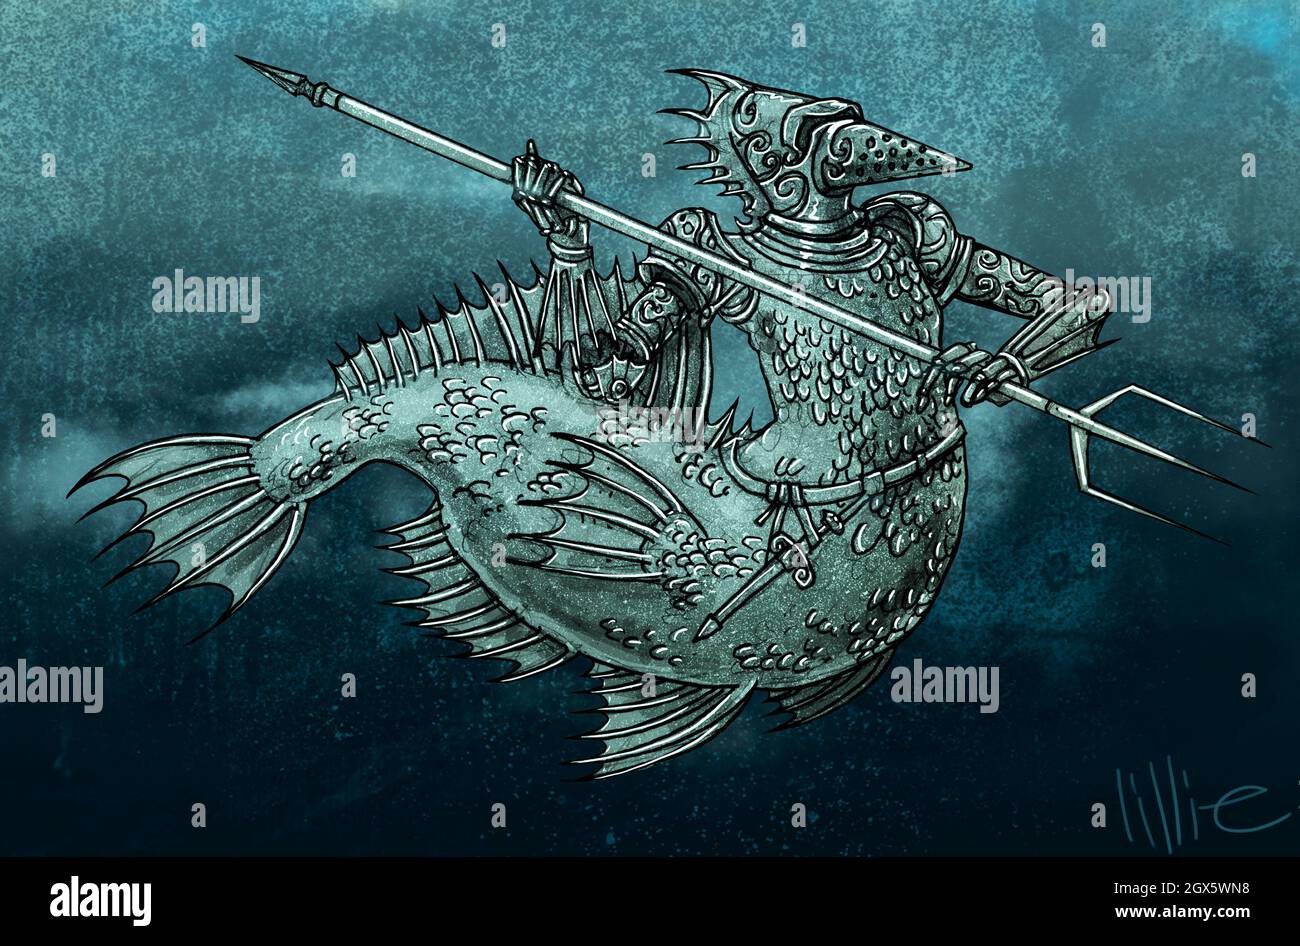 Kunstdarstellung eines Unterwasser-Zitirons oder Seeritters das Fabelwesen hat einen Oberkörper in Form eines bewaffneten Ritters, einen Unterkörper wie ein Fisch Stockfoto